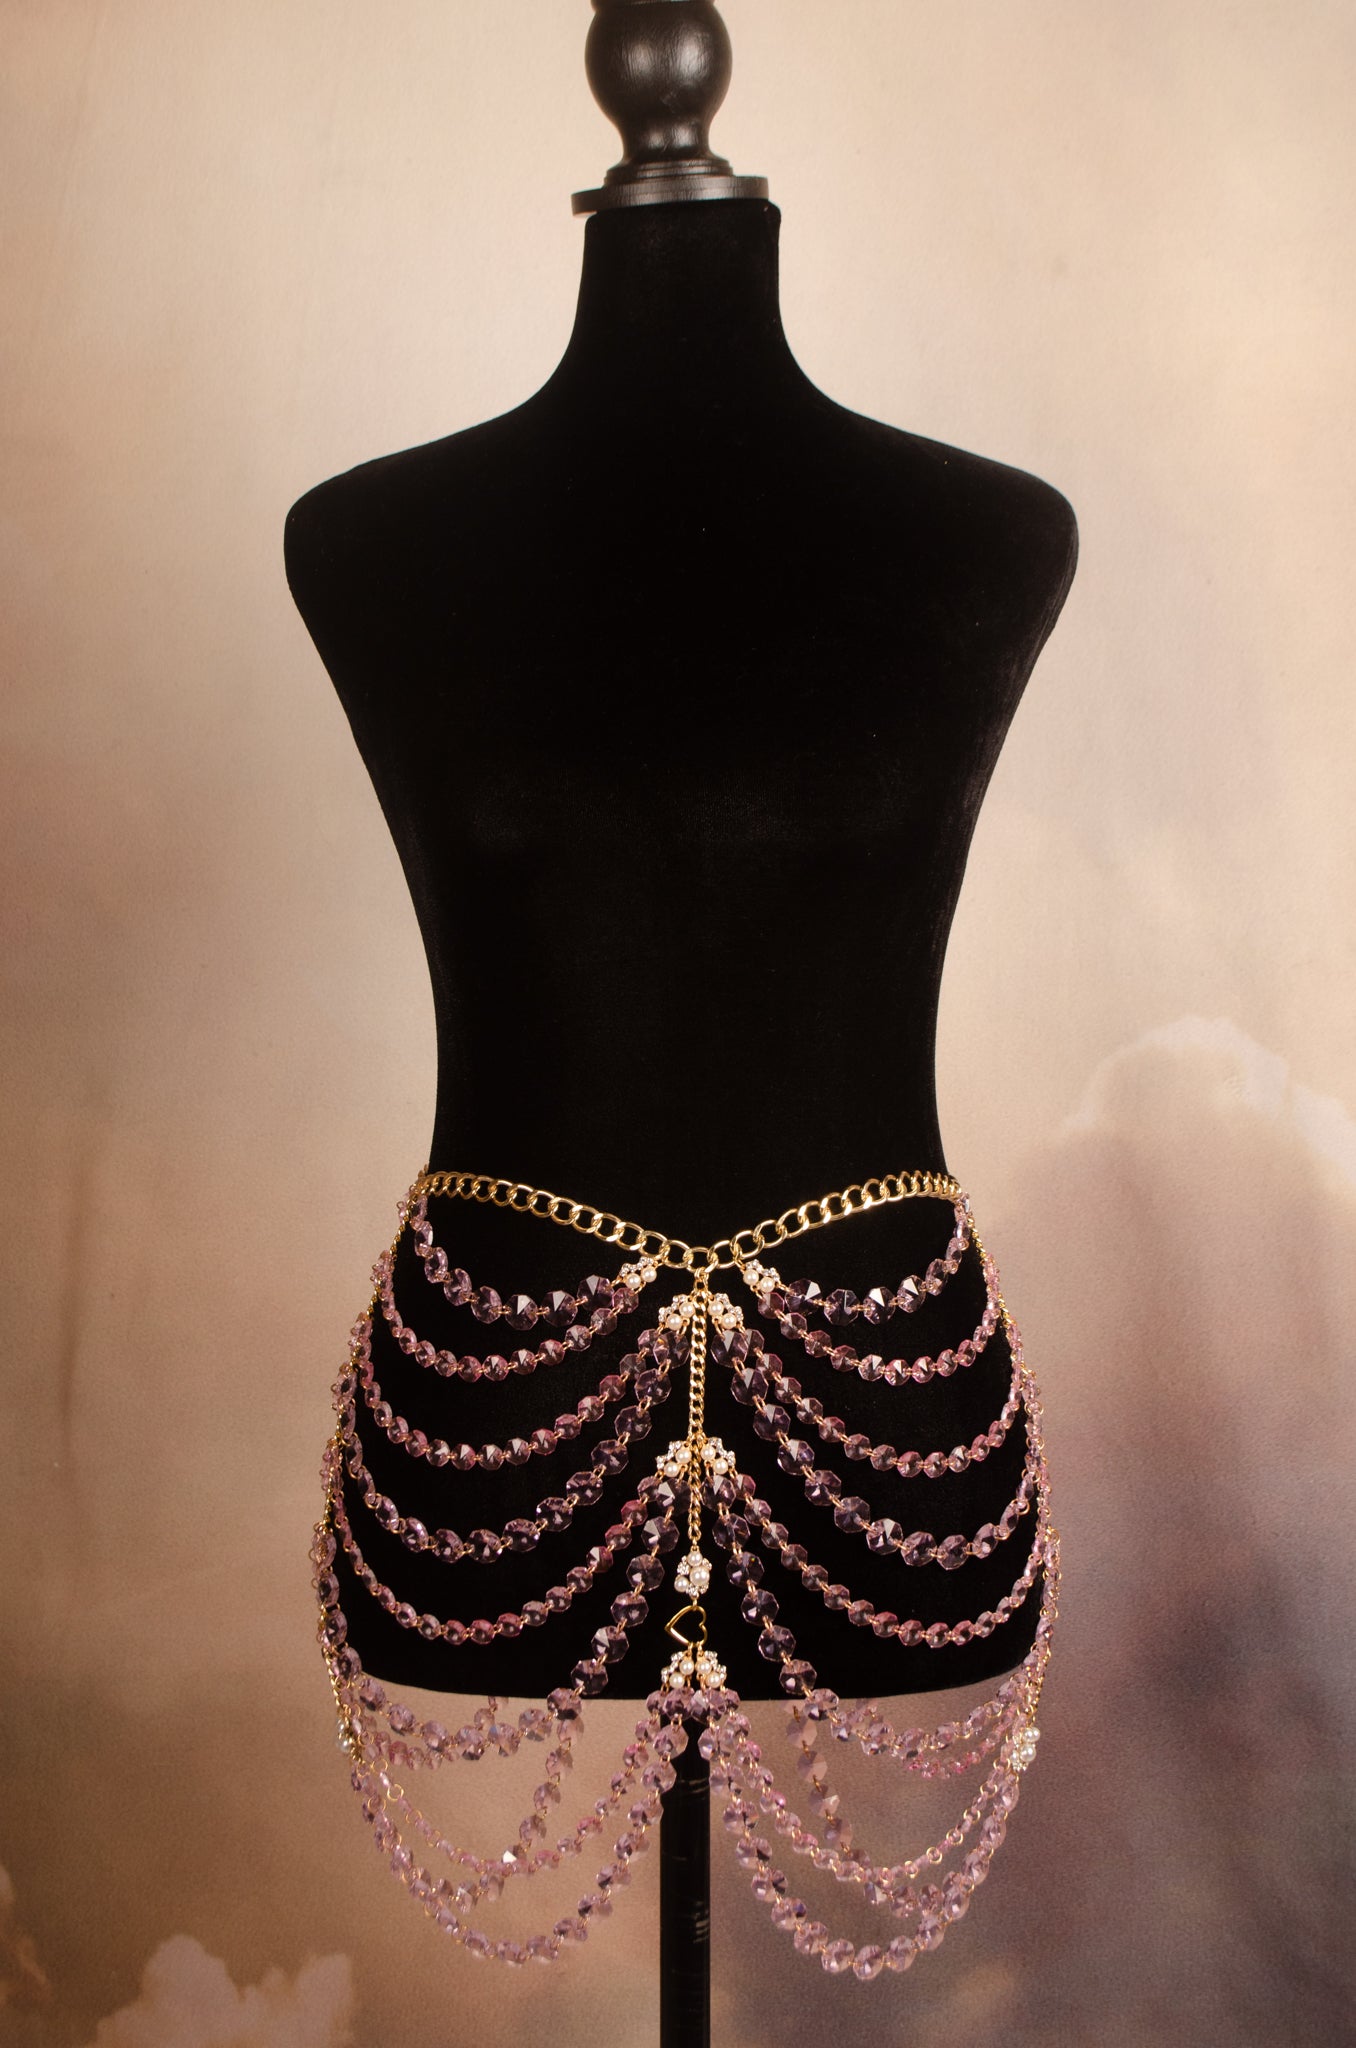 The Antoinette Crystal Skirt